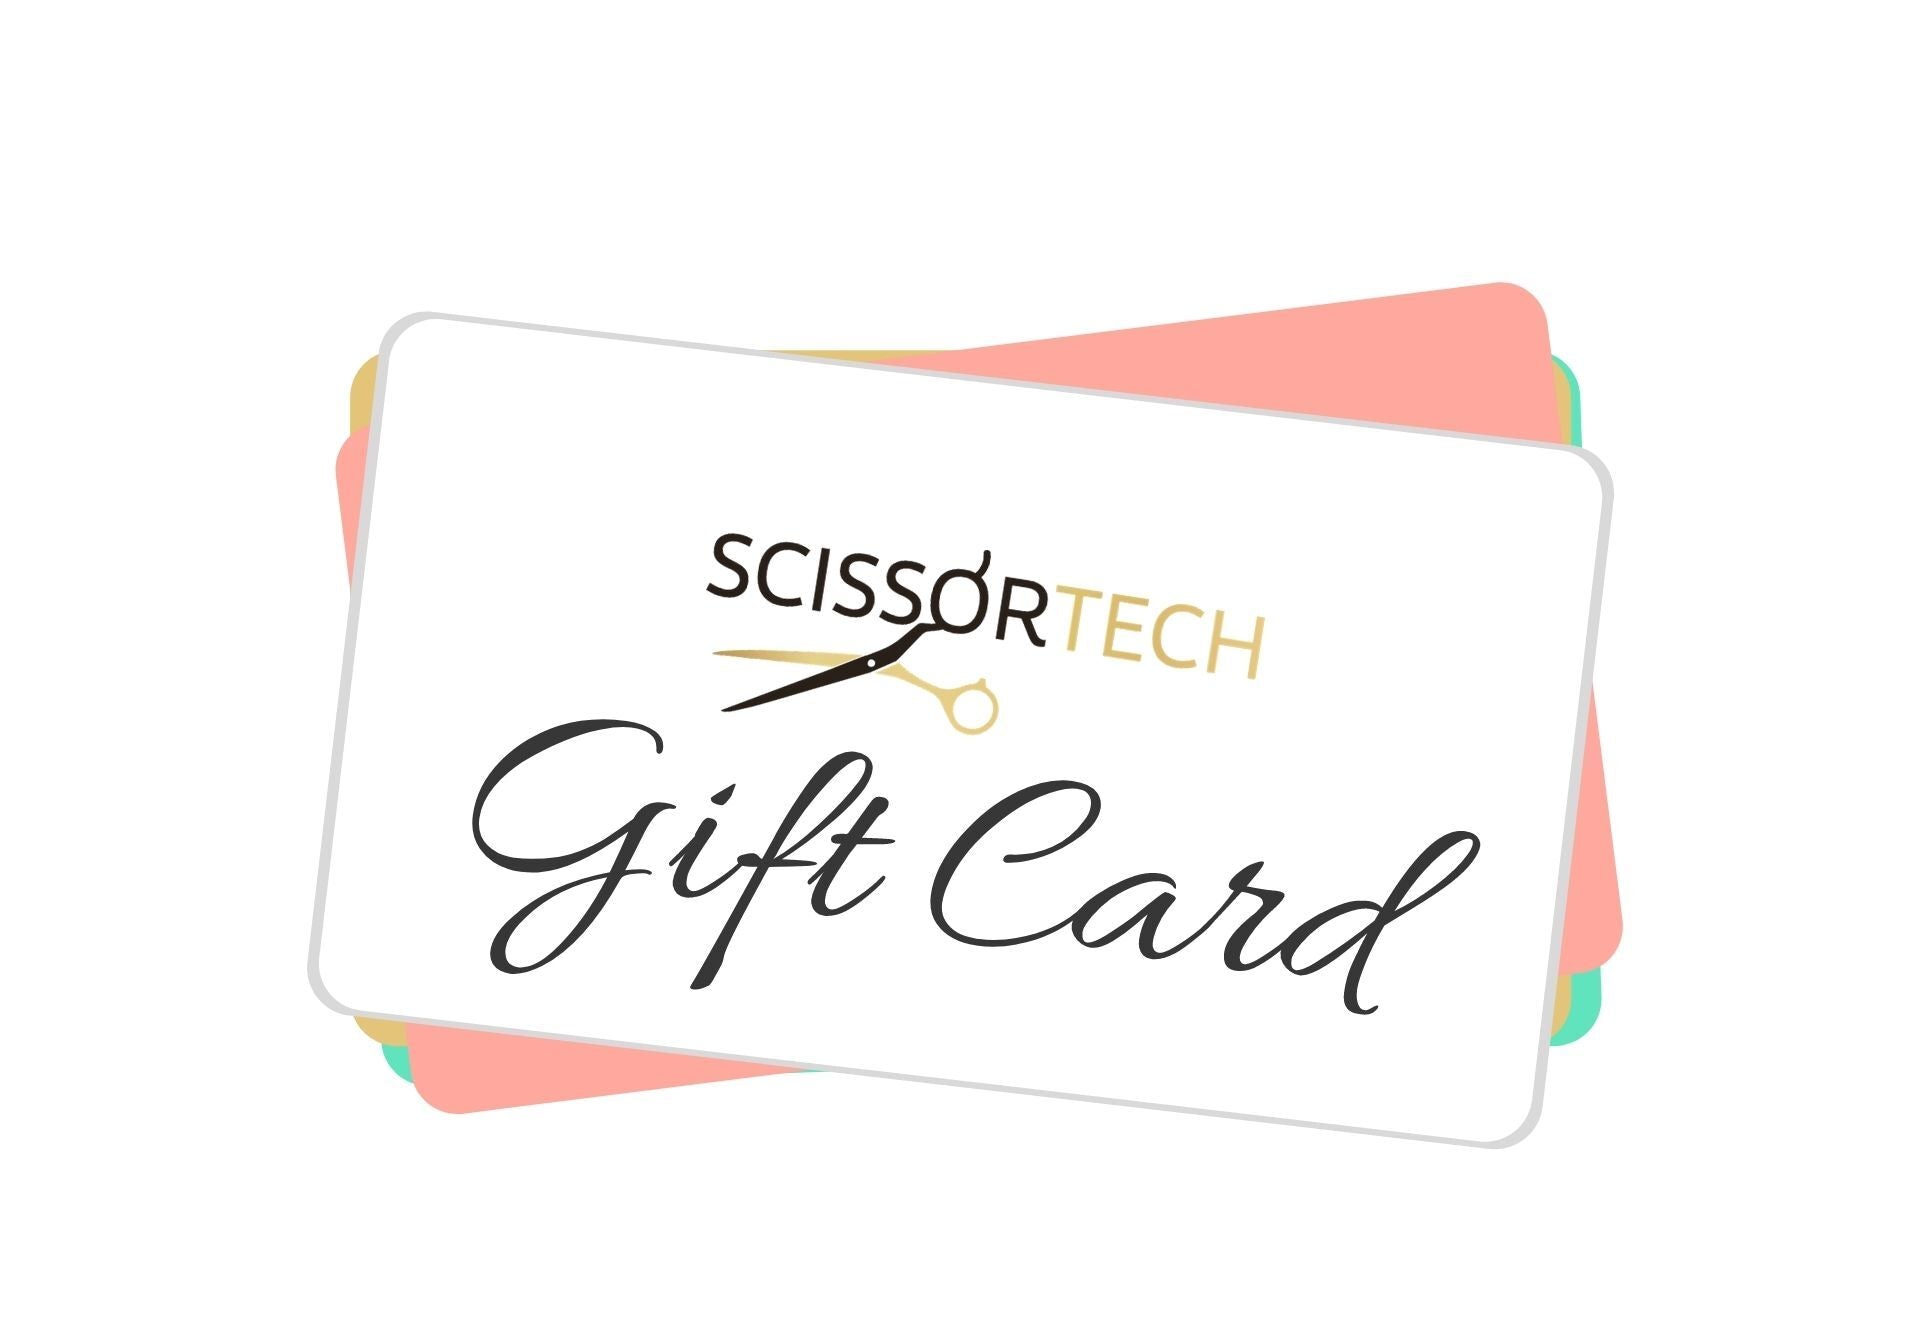 Scissor Tech Gift Card (7844792400)